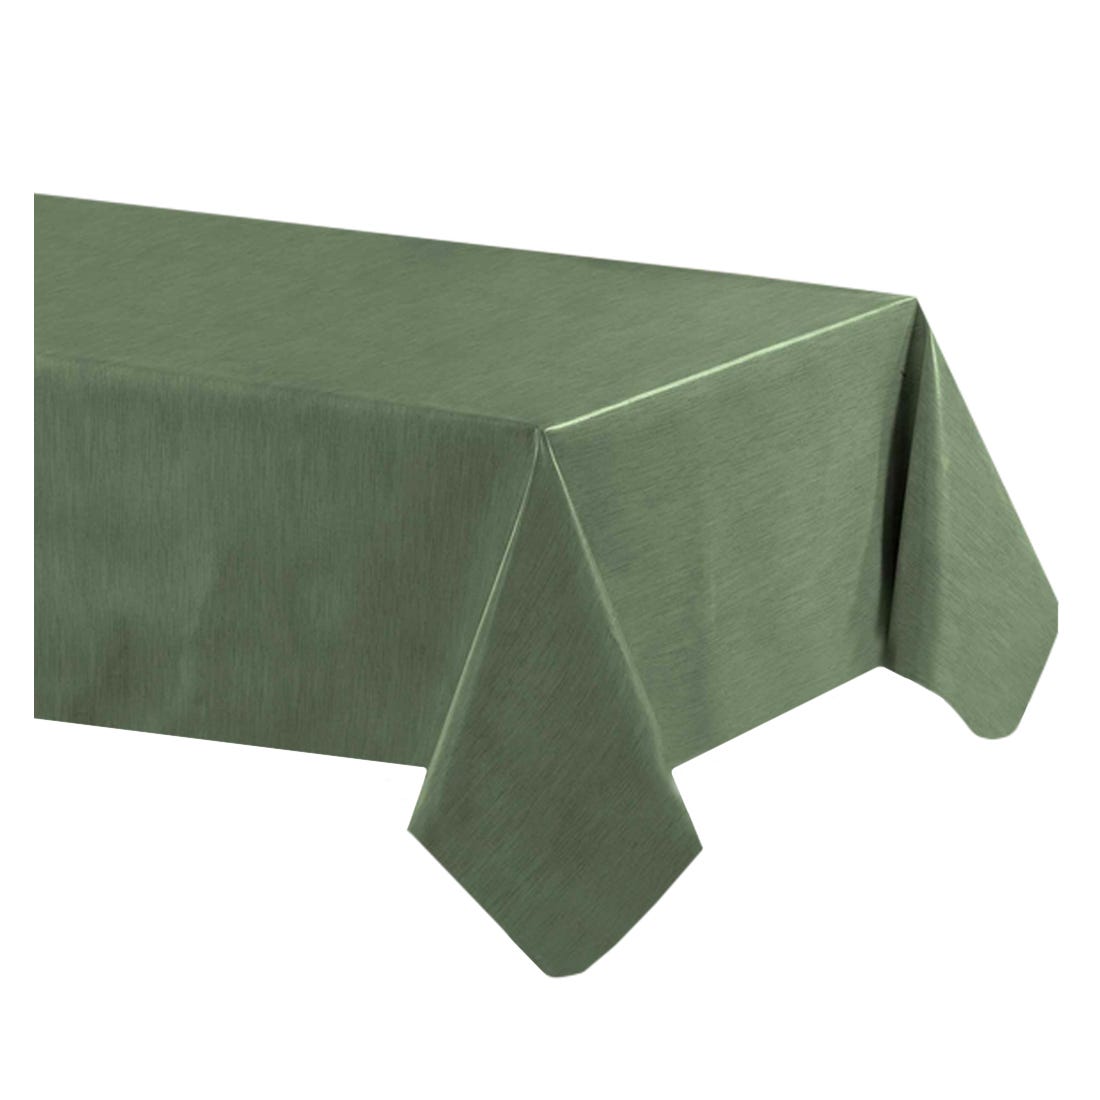 Acomoda Textil – Mantel Antimanchas Rectangular de Hule al Corte. Mantel  Liso Elegante, Impermeable, Resistente y Lavable. (Verde Caqui, 140x240 cm)